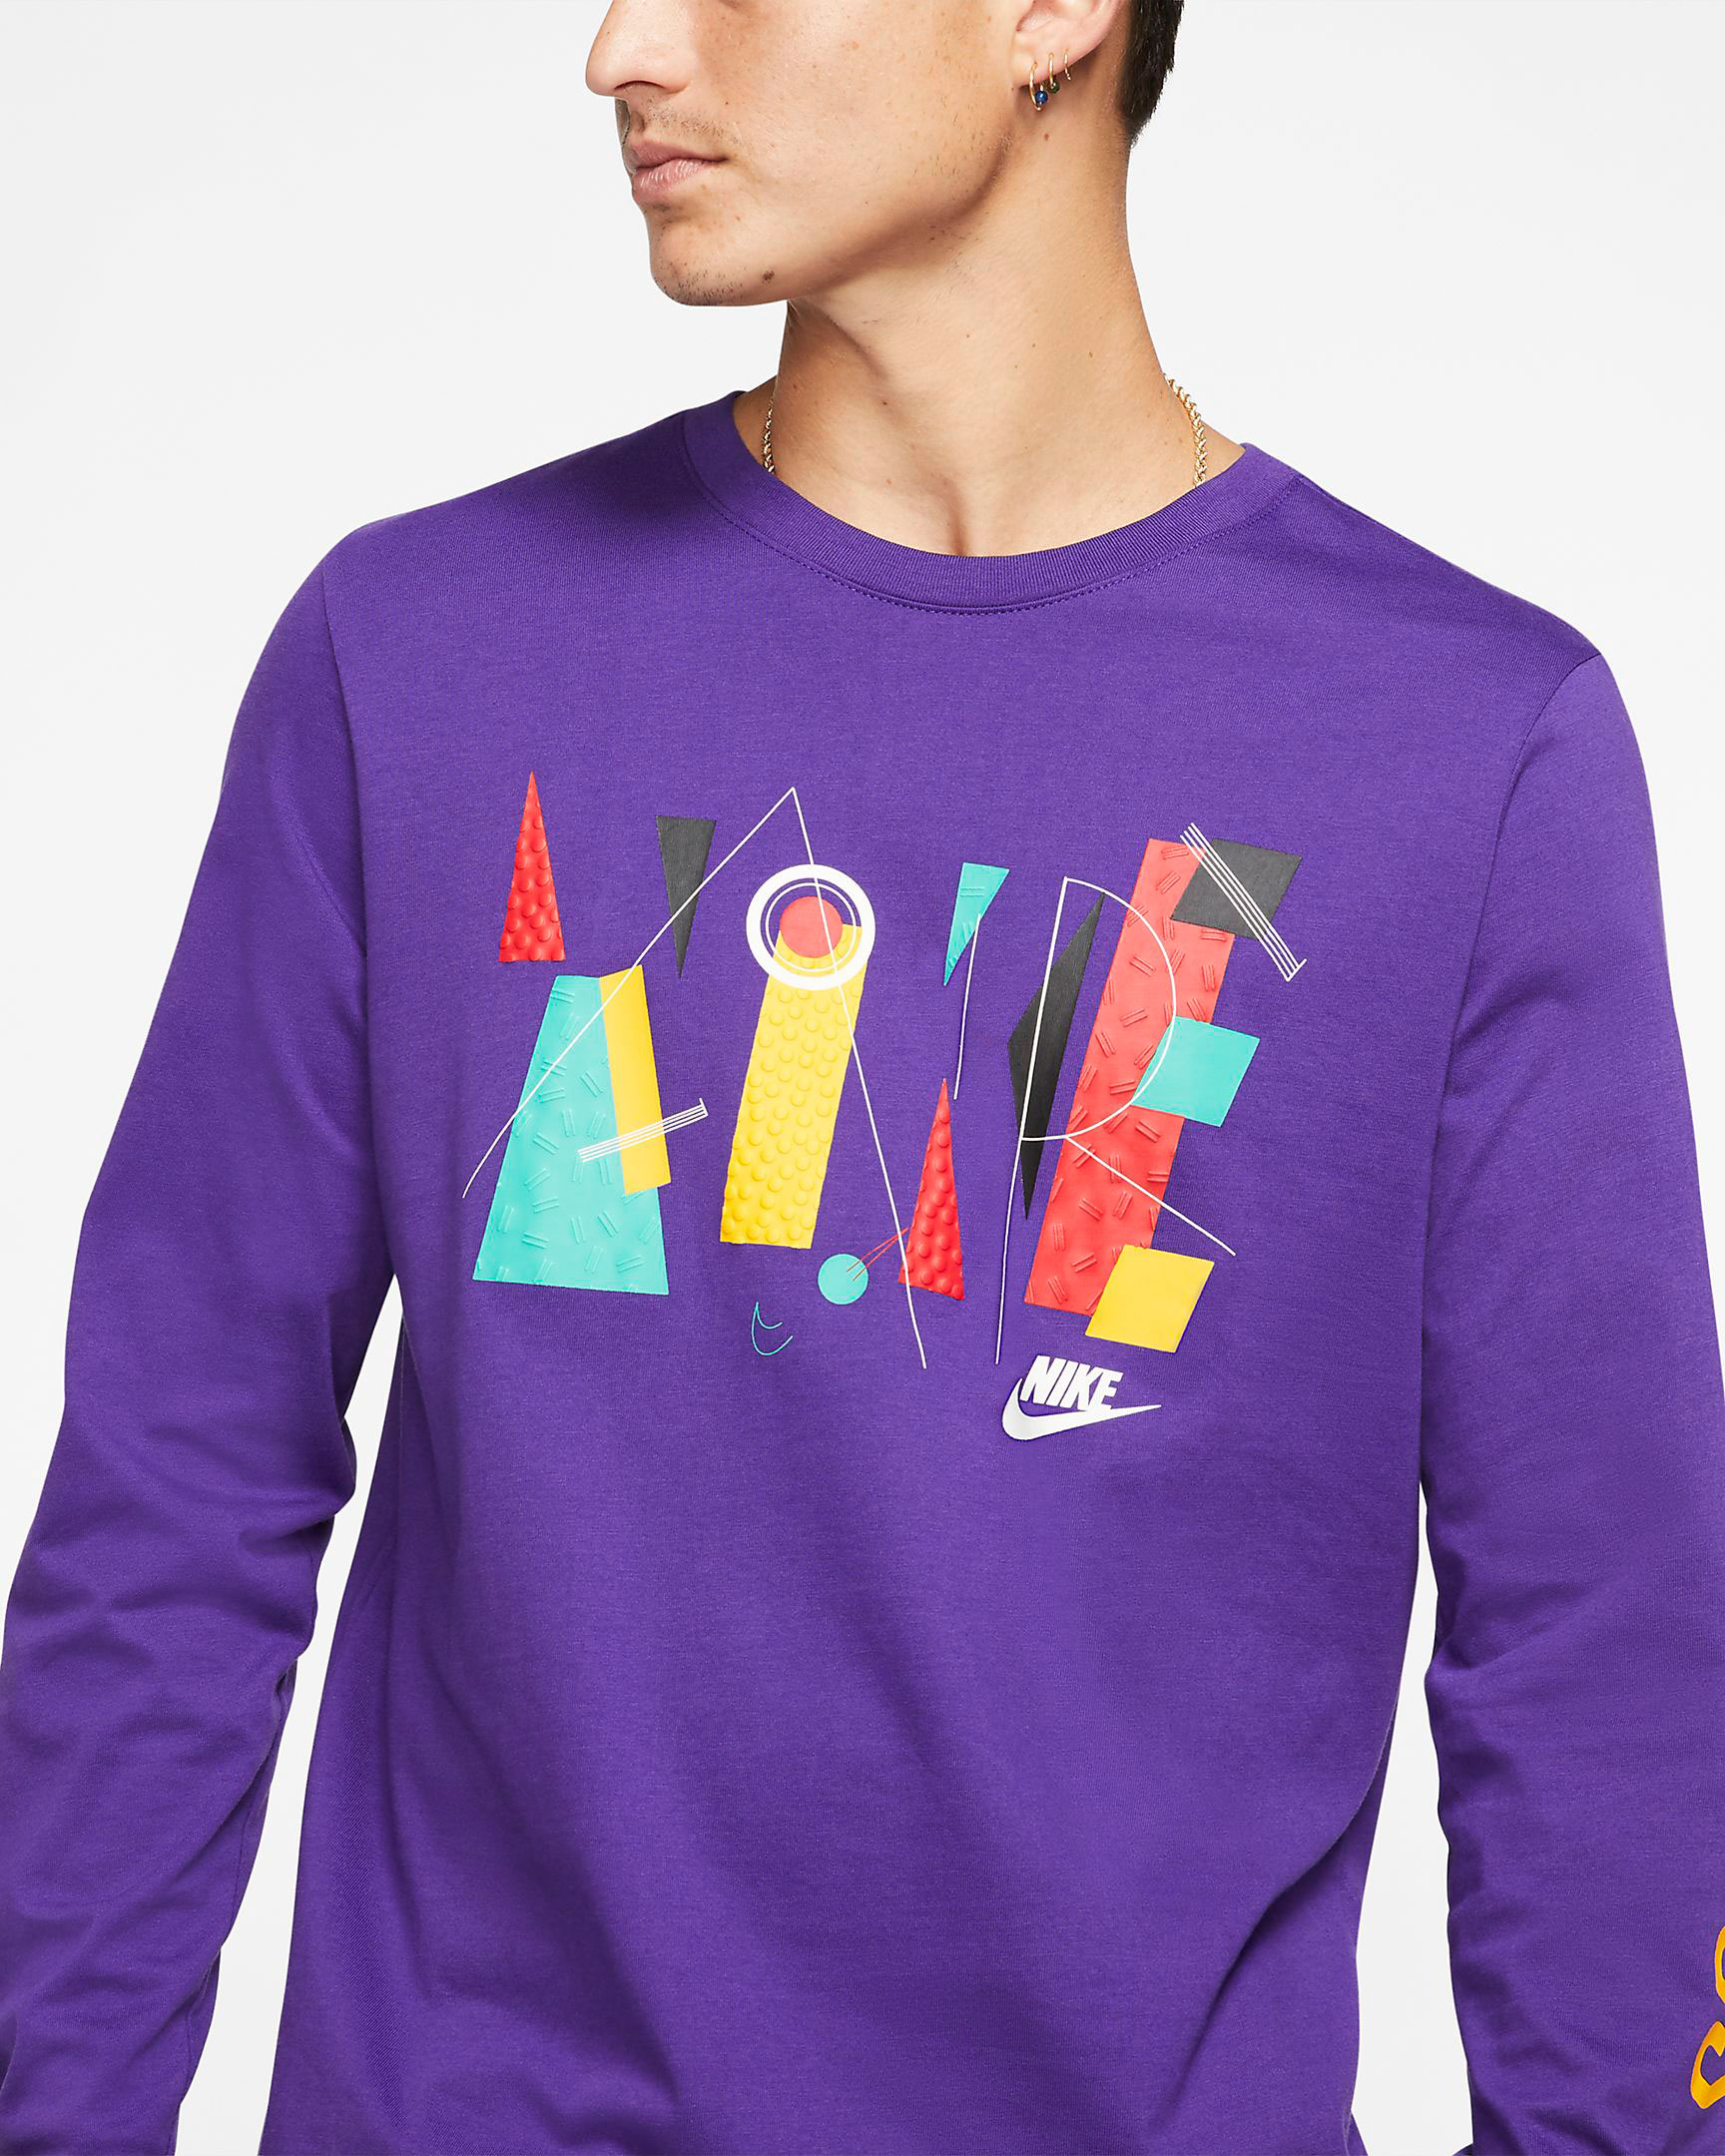 nike-game-changer-shirt-purple-1